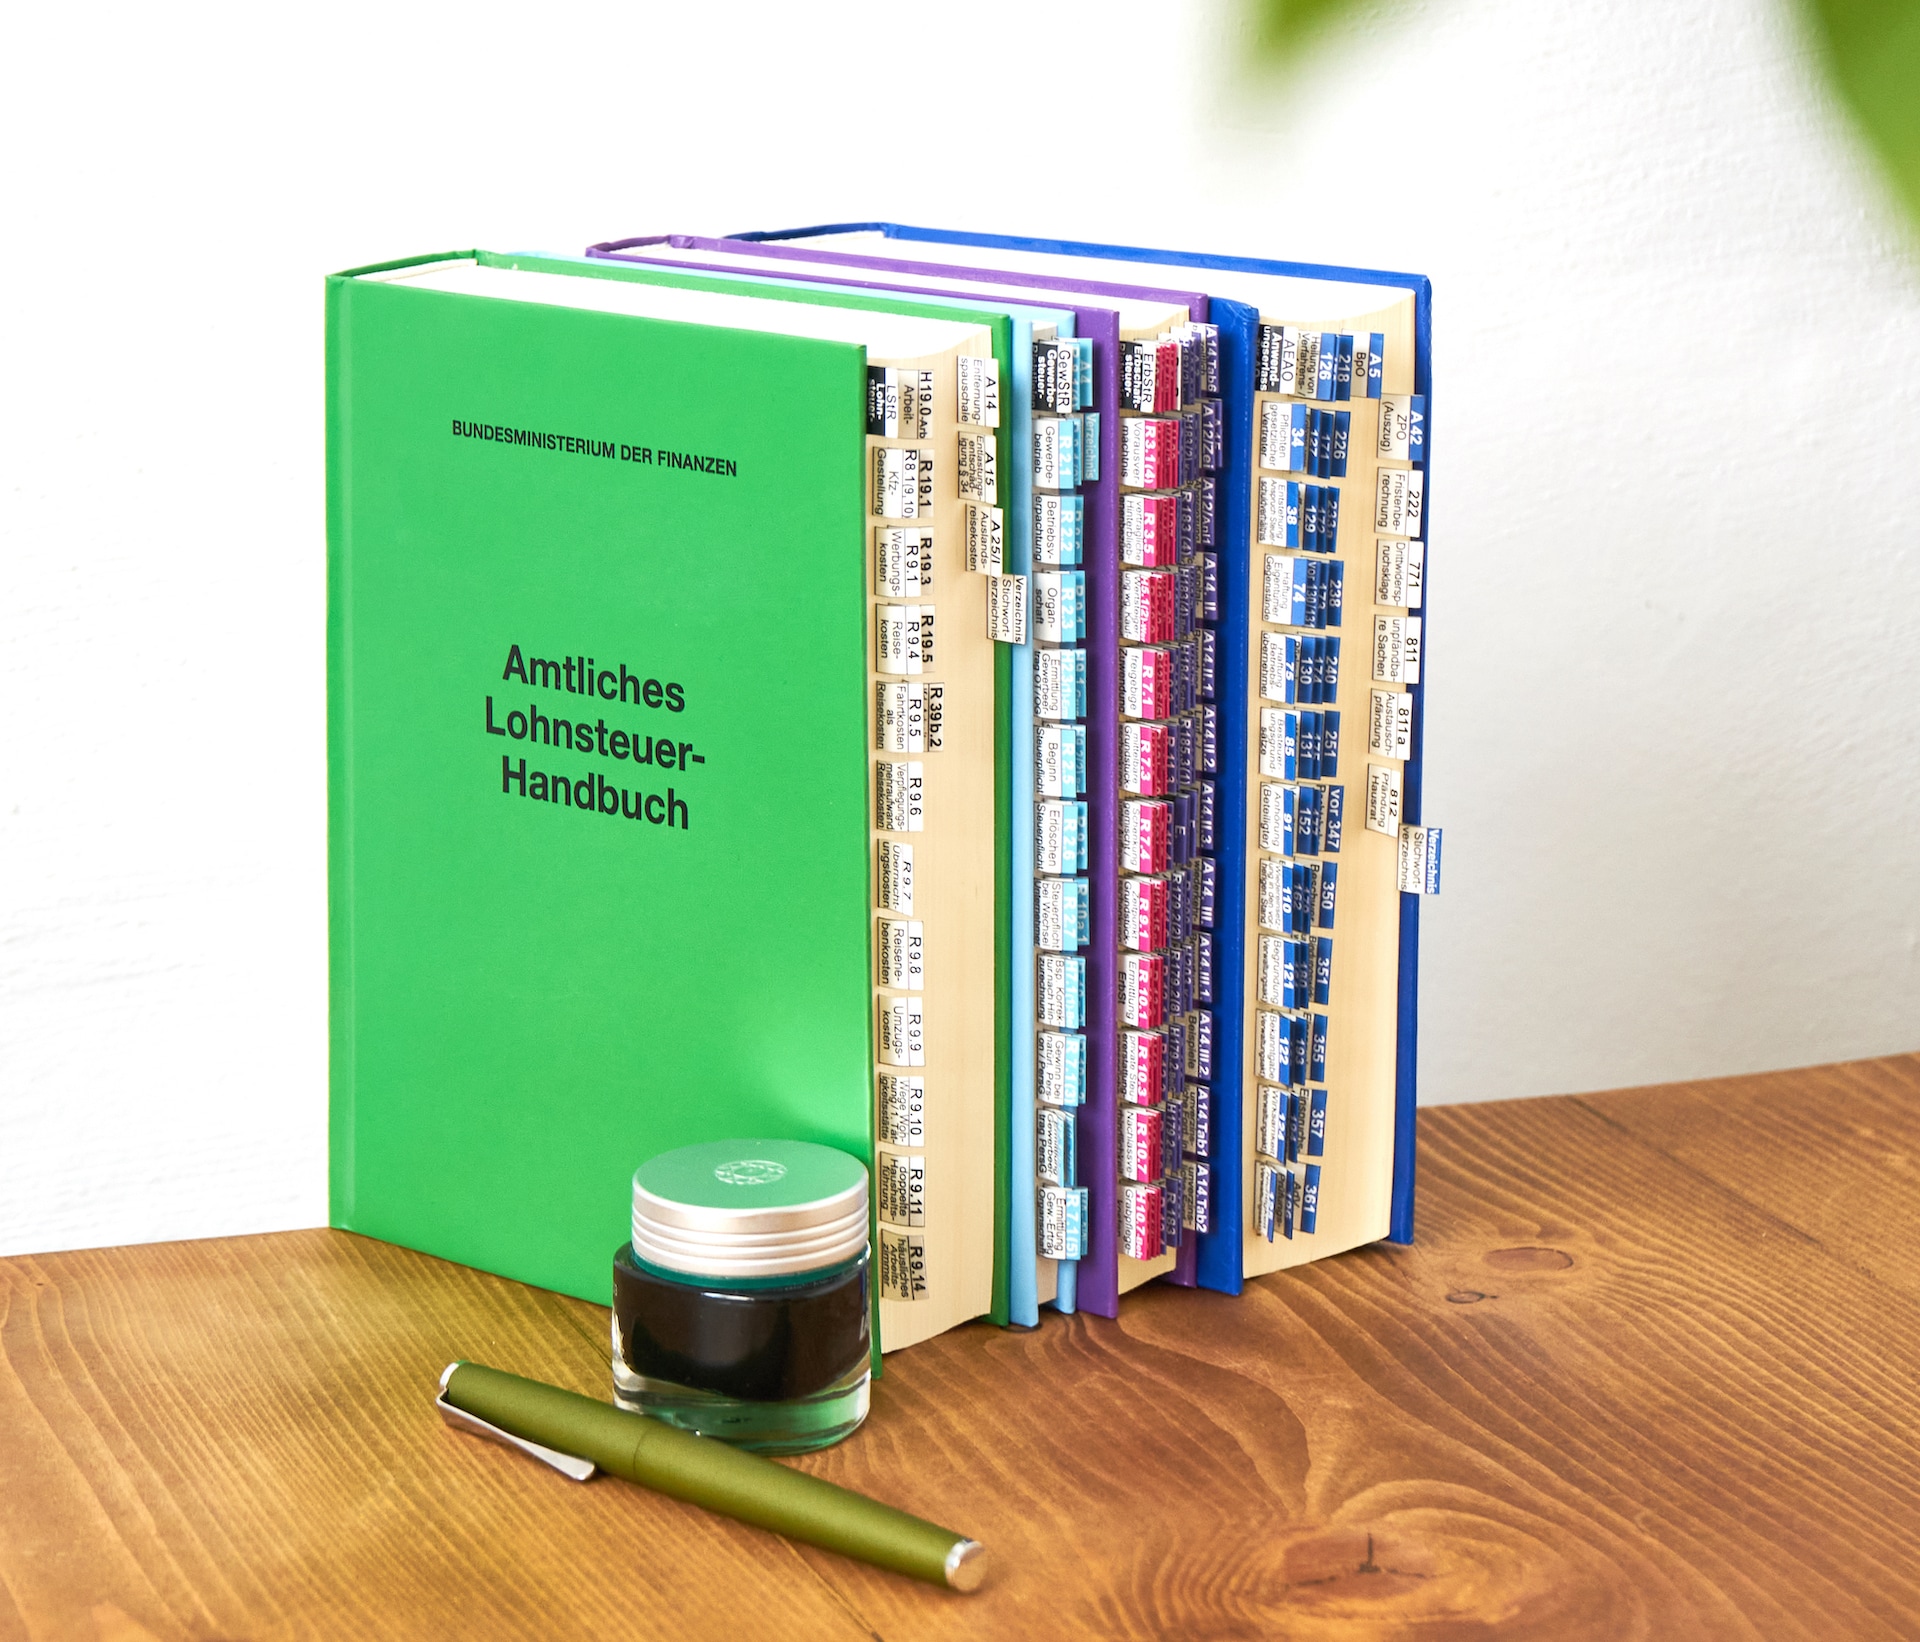 BMF Handbücher stehen nebeneinander mit eingeklebten Griffegistern auf einem Schreibtisch.